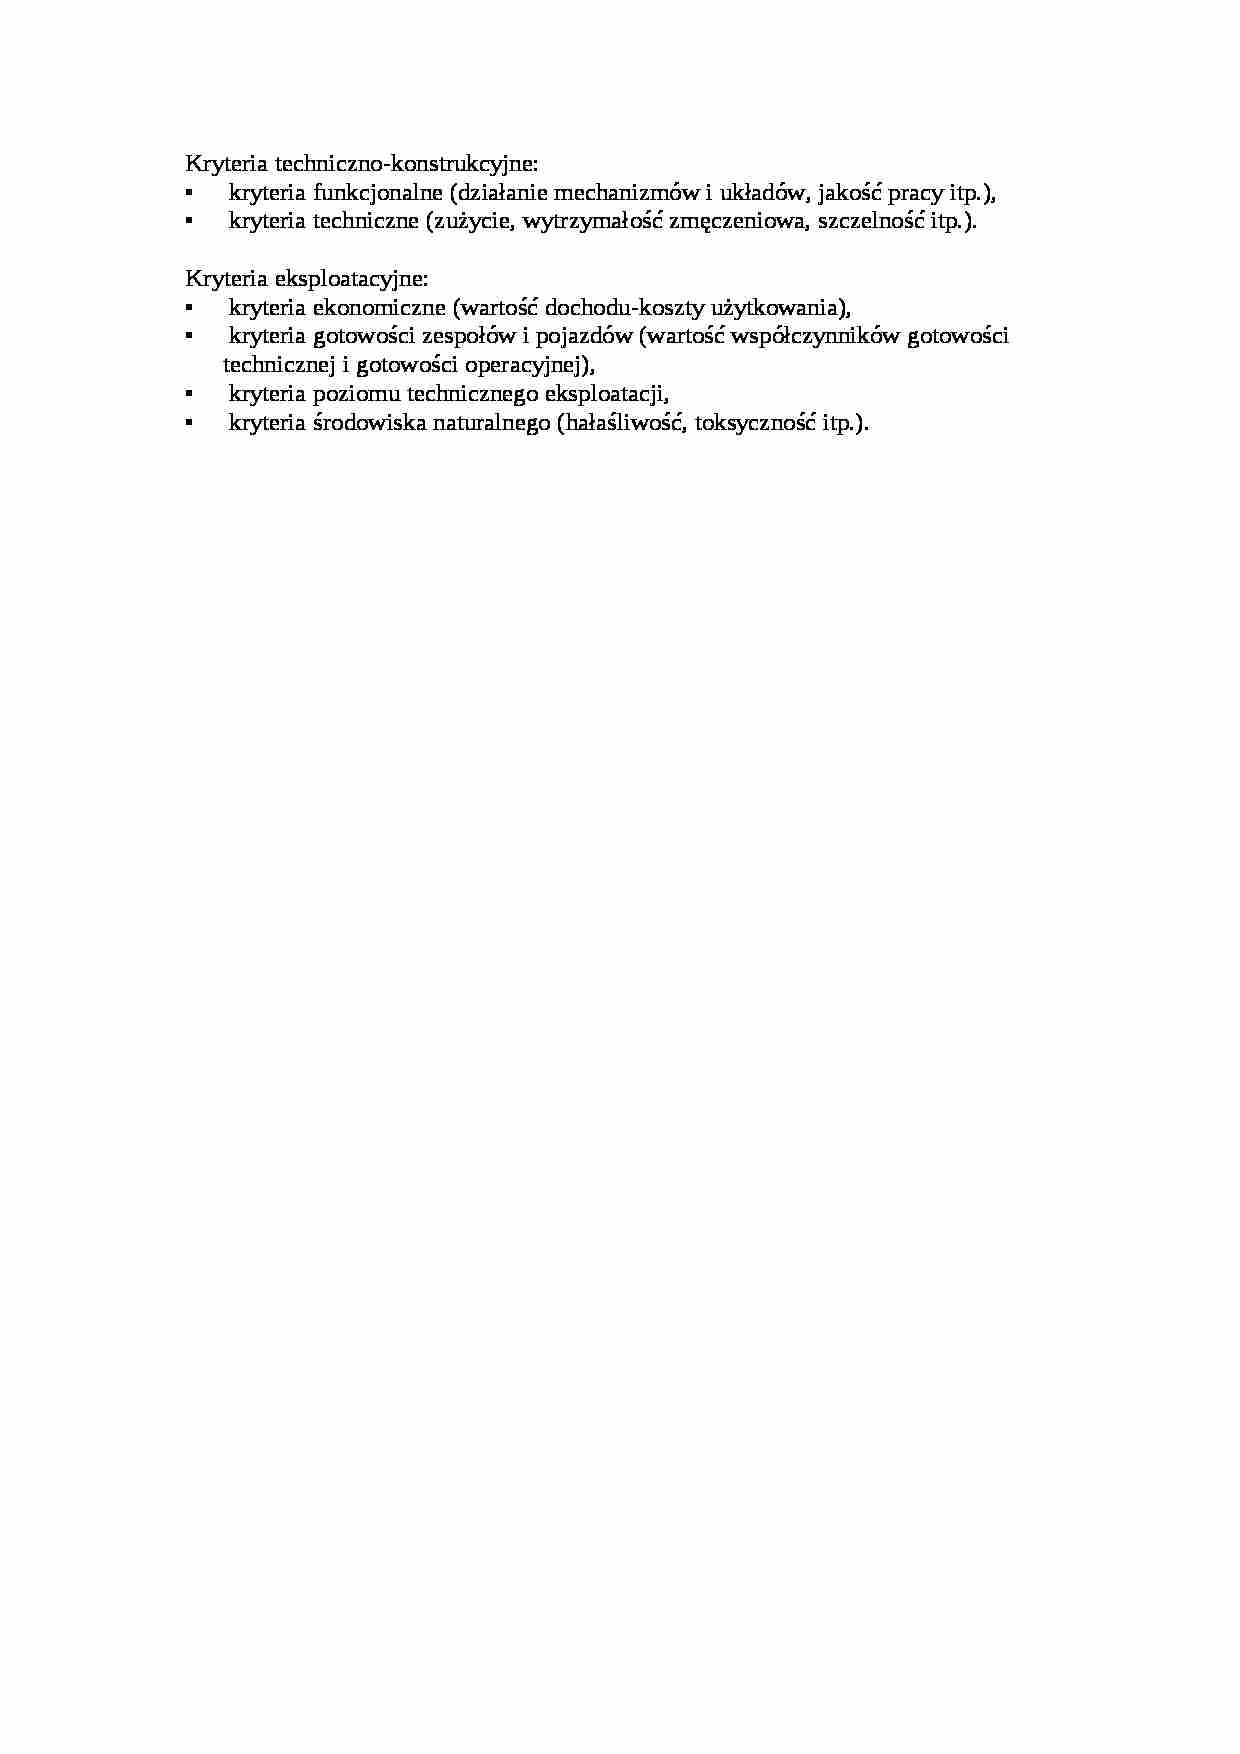 Kryteria techniczno-konstrukcyjne - strona 1